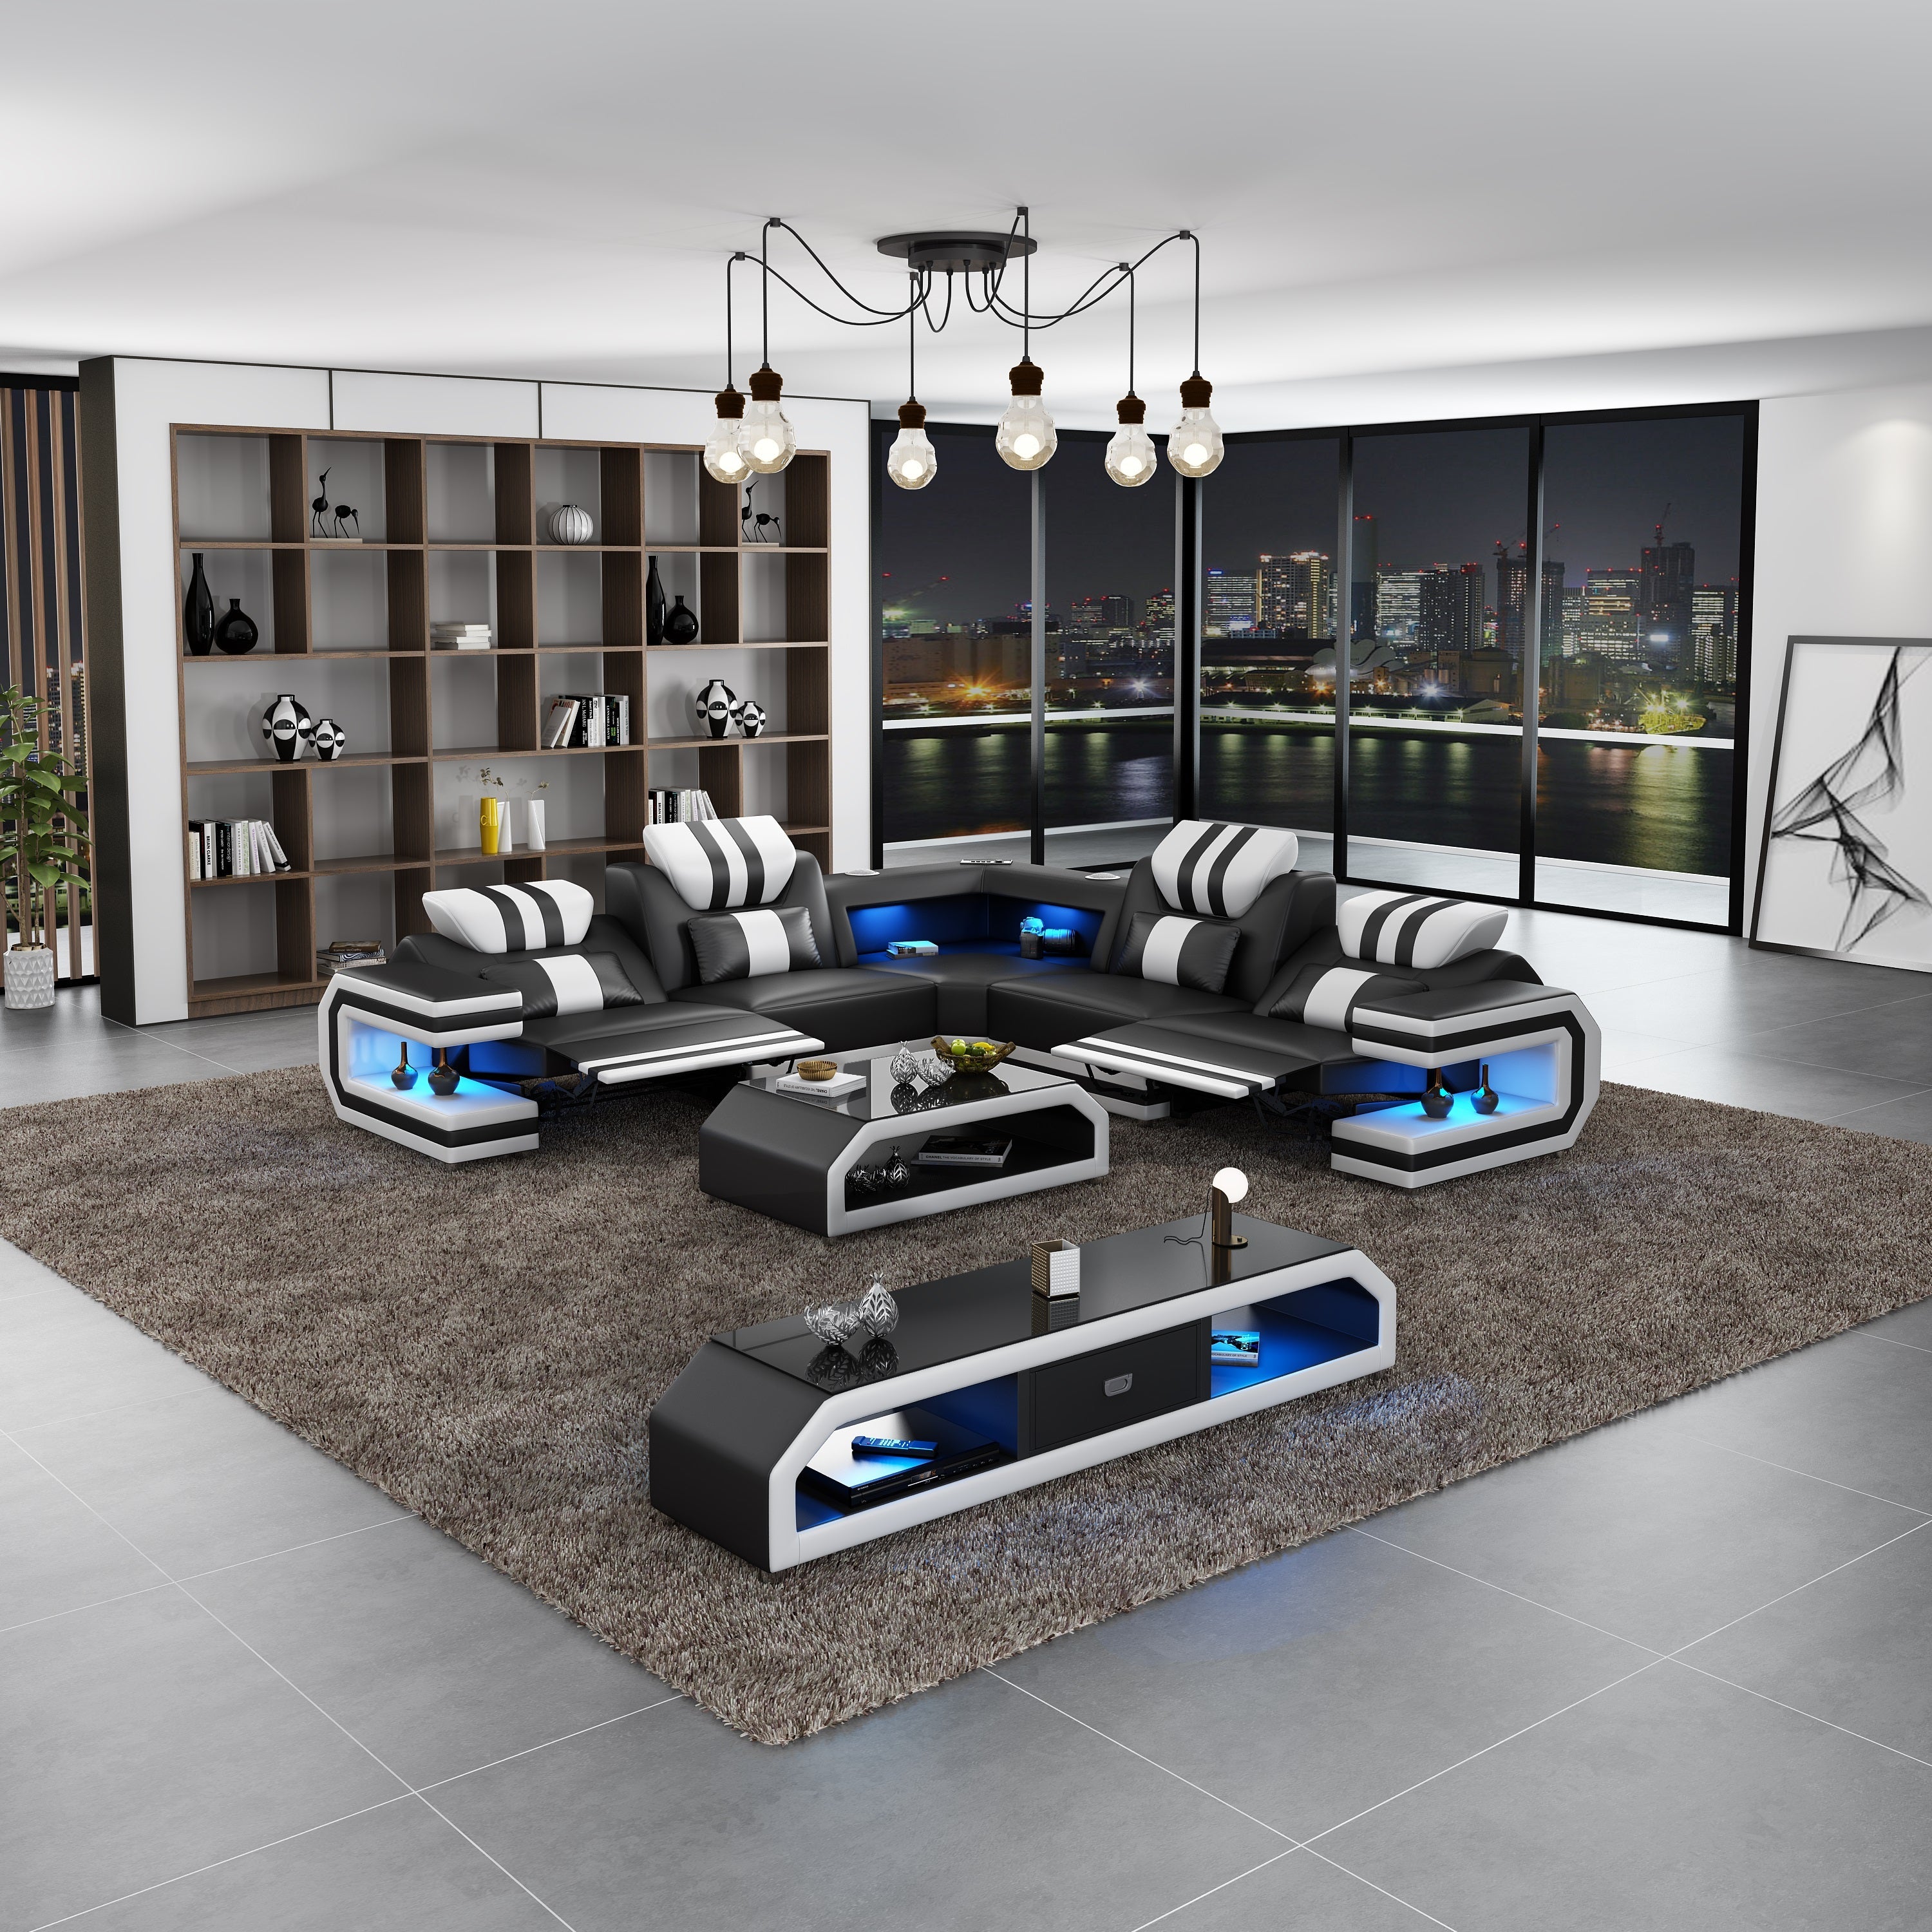 European Furniture - Lightsaber LED Sectional Black White Italian Leather - LED-87770-BW - New Star Living